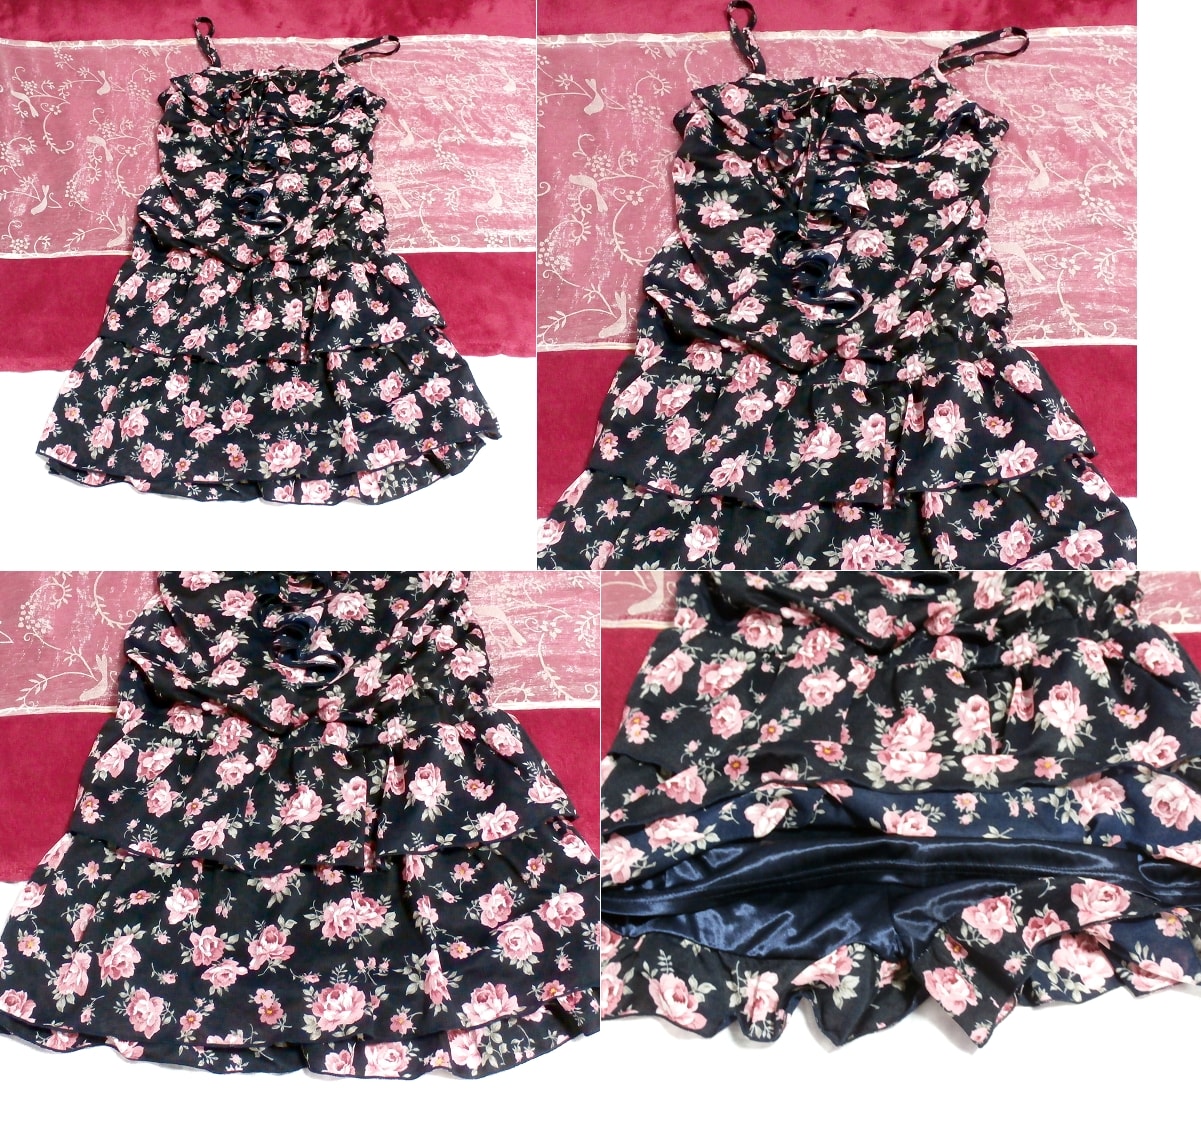 Schwarzes, marineblaues Camisole-Negligé-Nachthemd-Culotte-Kleid aus Chiffon mit Blumenmuster, Mode, Frauenmode, Leibchen